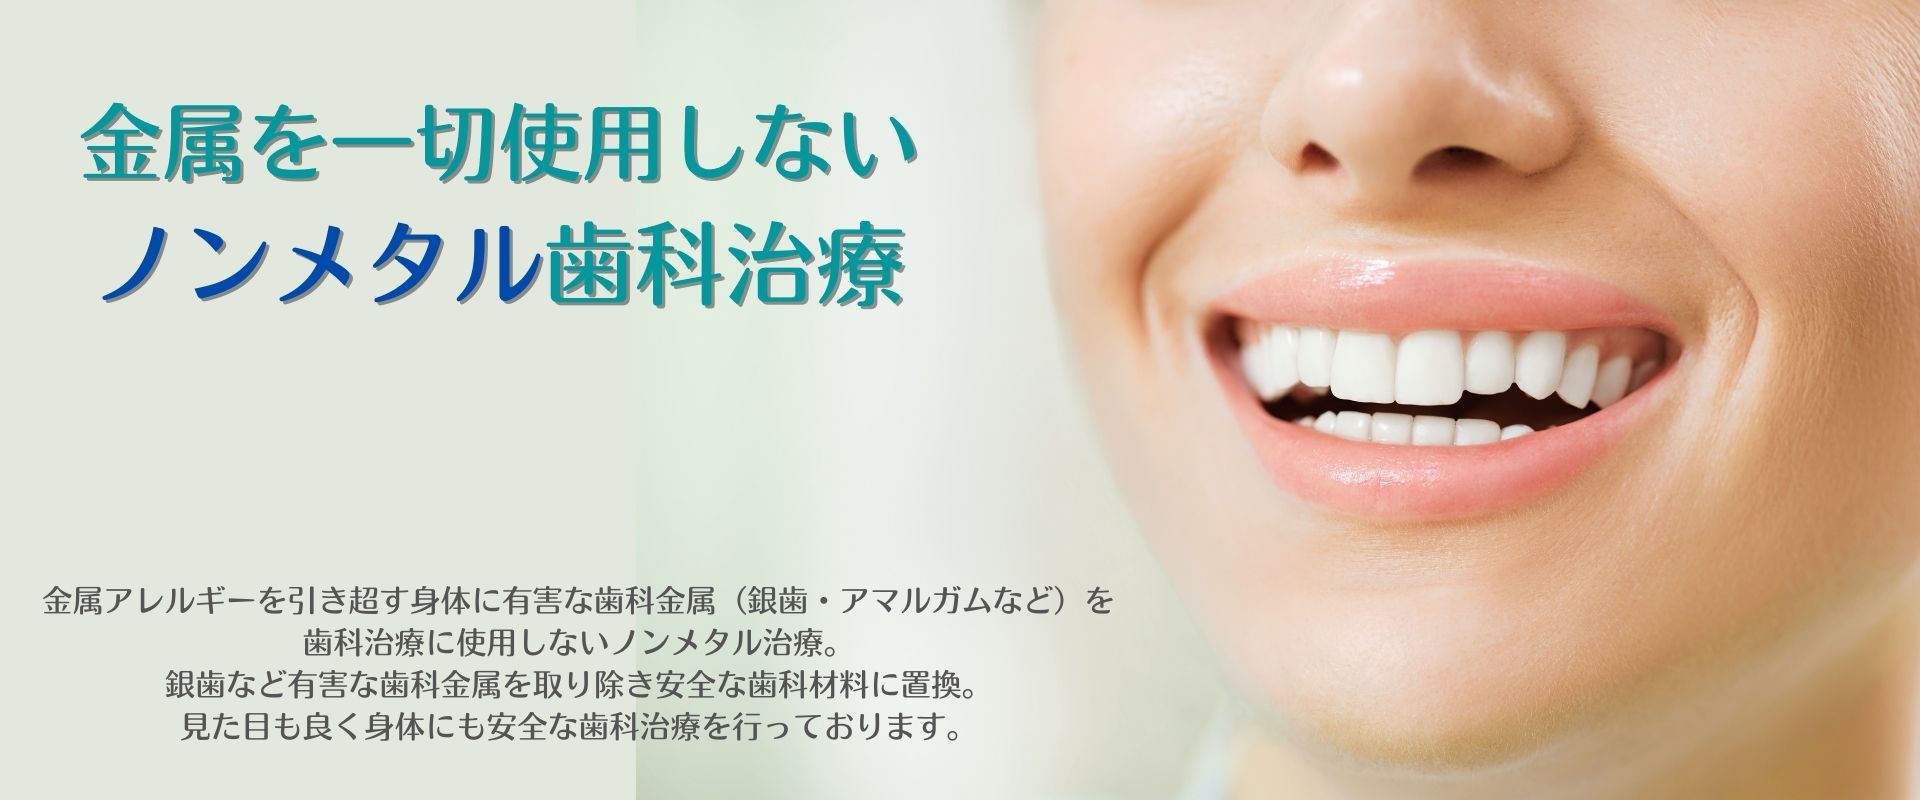 歯科,金属アレルギーなら香川県の吉本歯科医院